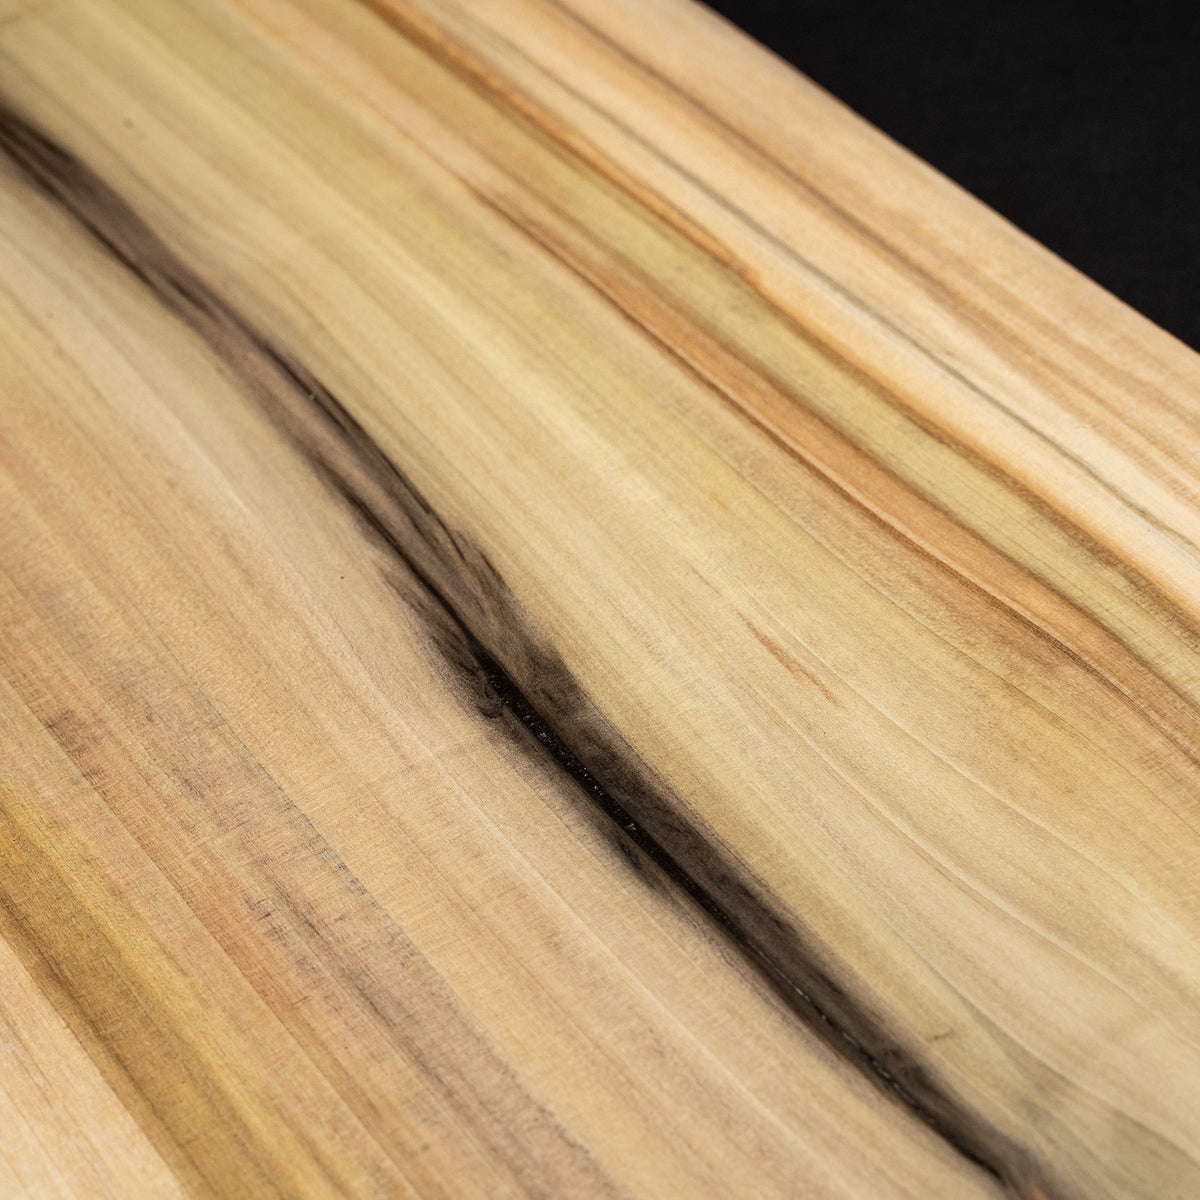 4/4 1” Live Edge Rainbow Poplar 1&quot; Slab - Wood Board Slabs Kiln Dried Boards - Cut to size